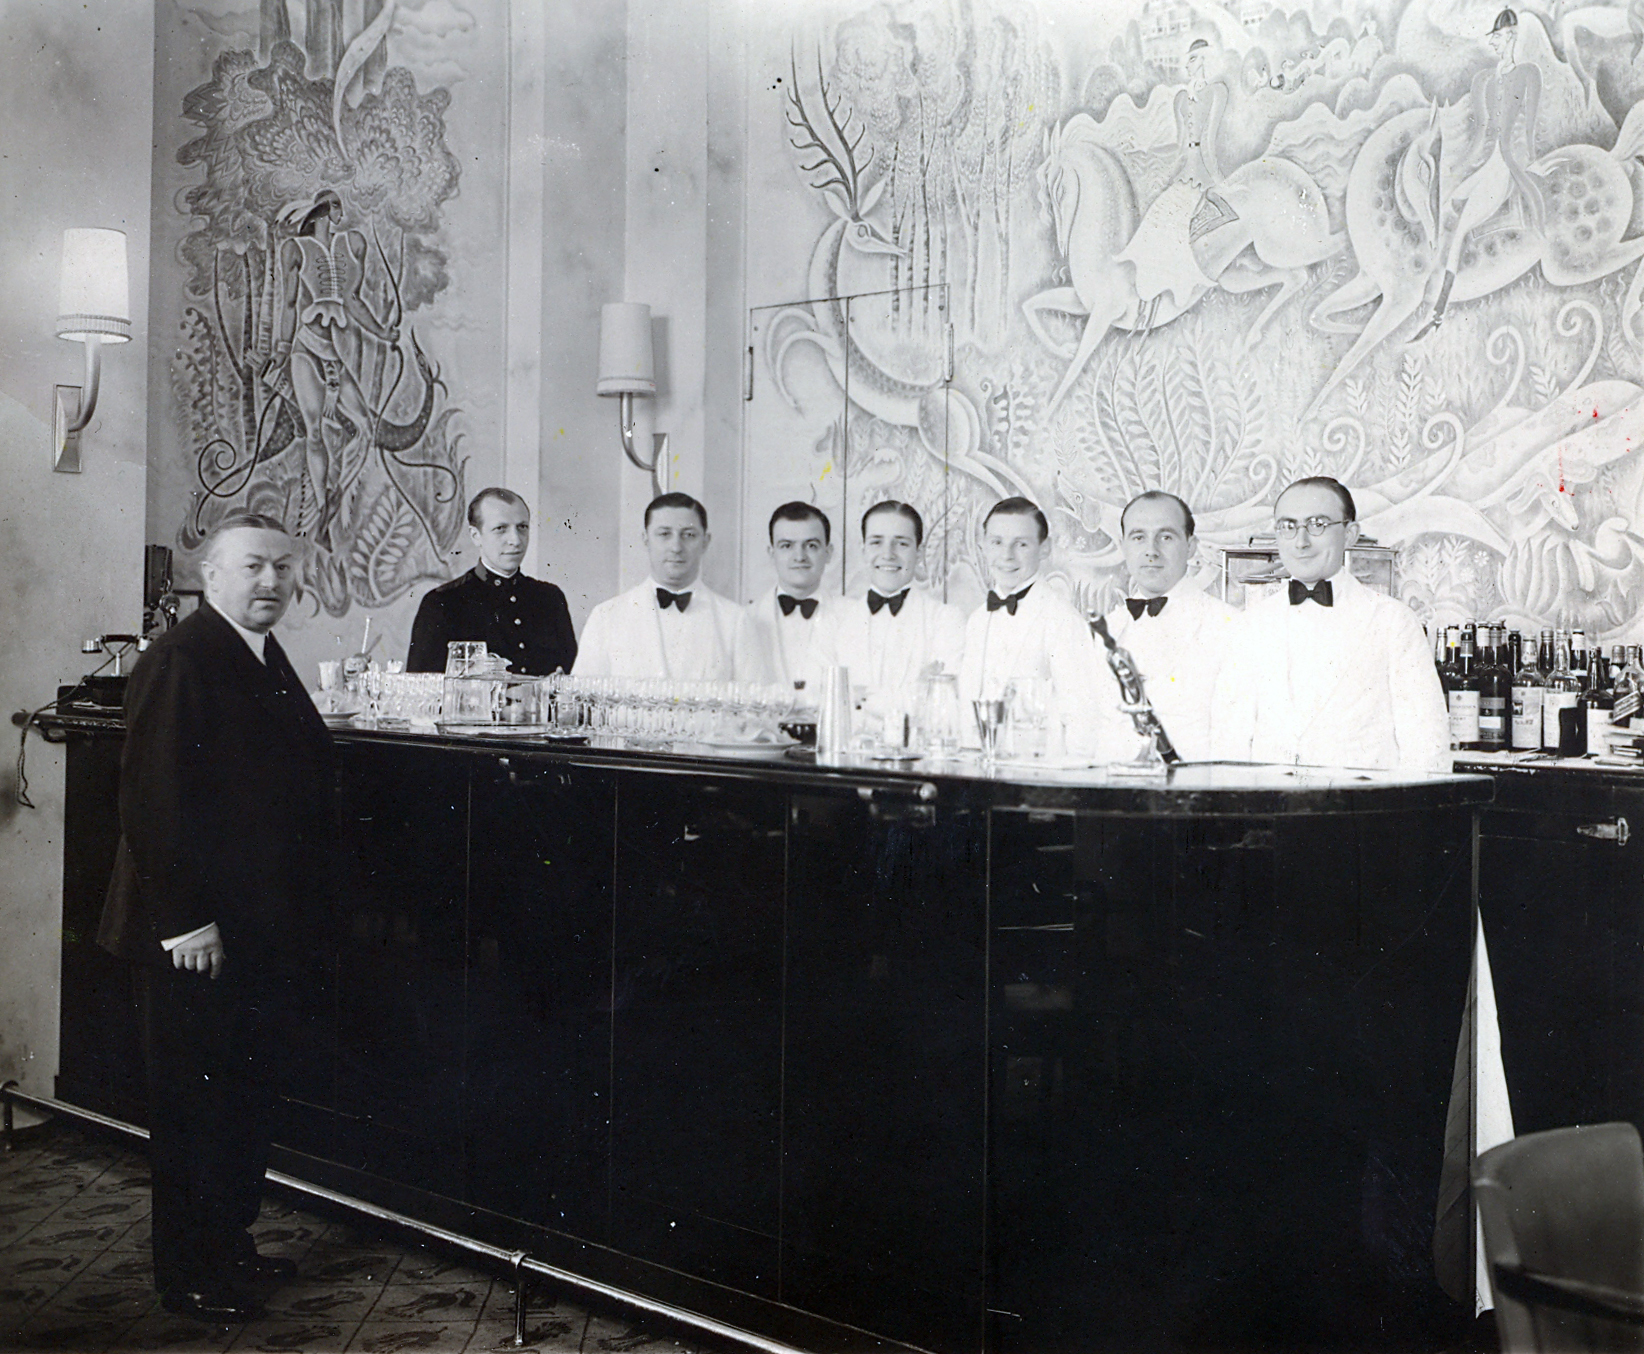 Фрэнк Мейер, управляющий&nbsp;баром &laquo;Камбон&raquo; в отеле&nbsp;Ritz, 1930 г.
